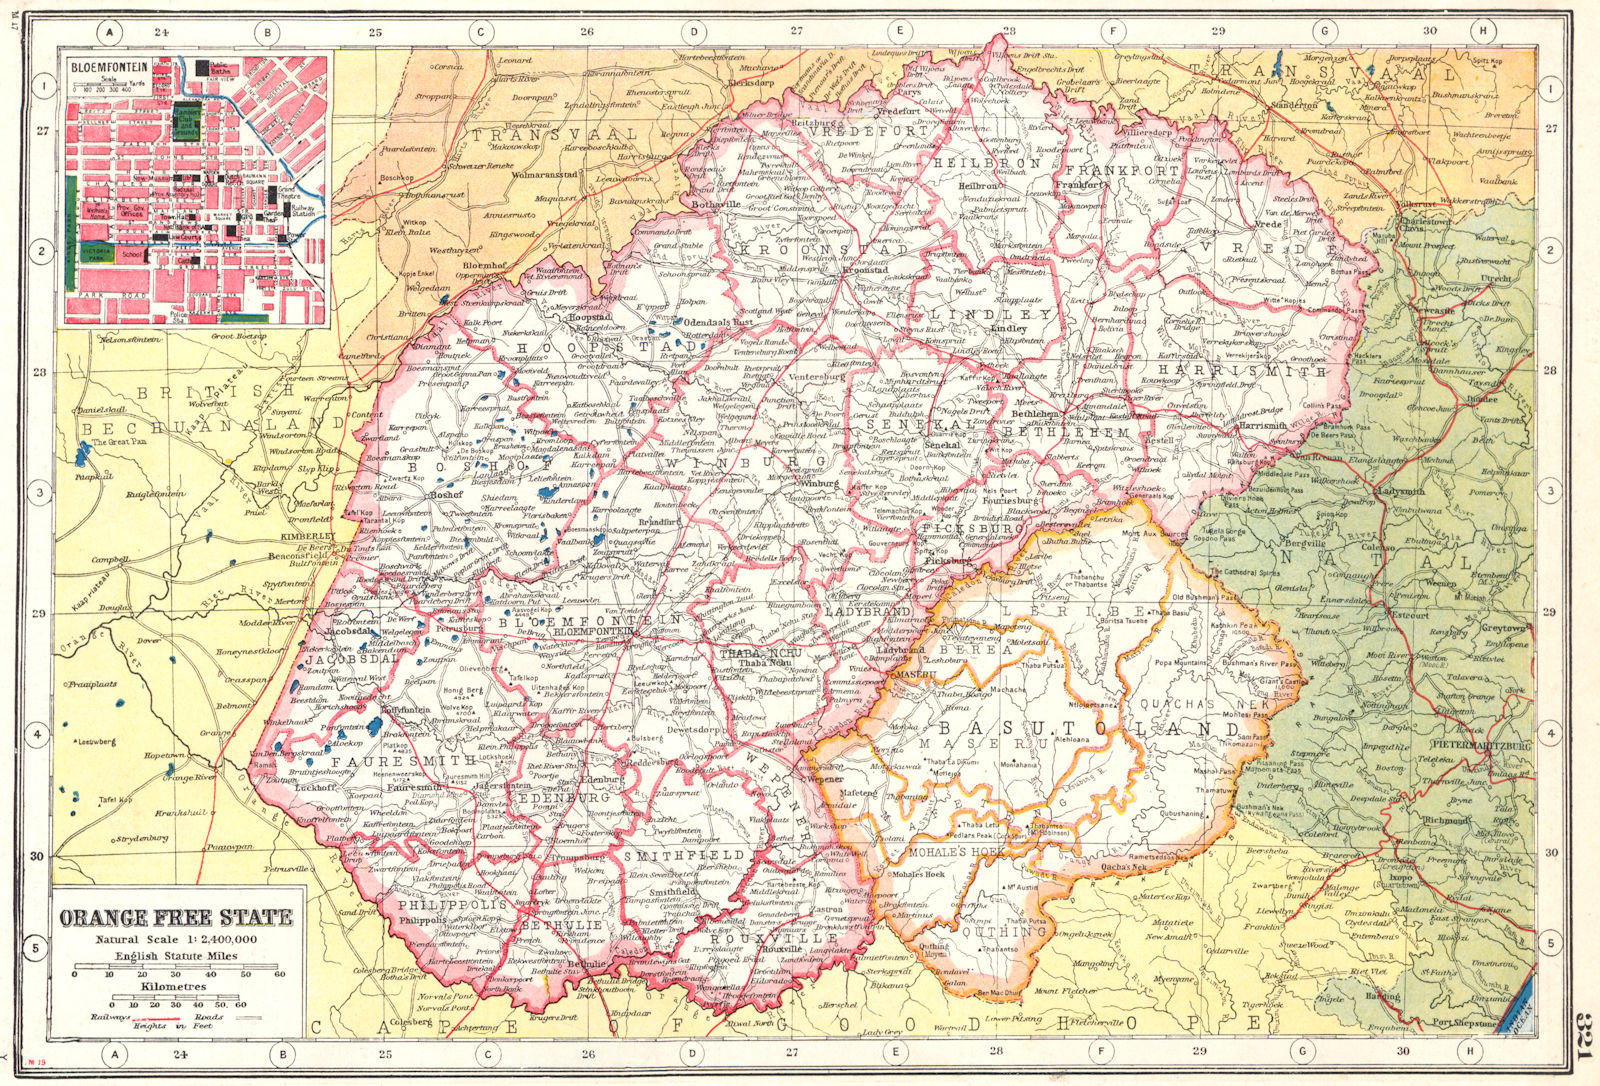 ORANGE FREE STATE. Railways. Inset Bloemfontein town plan.South Africa 1920 map